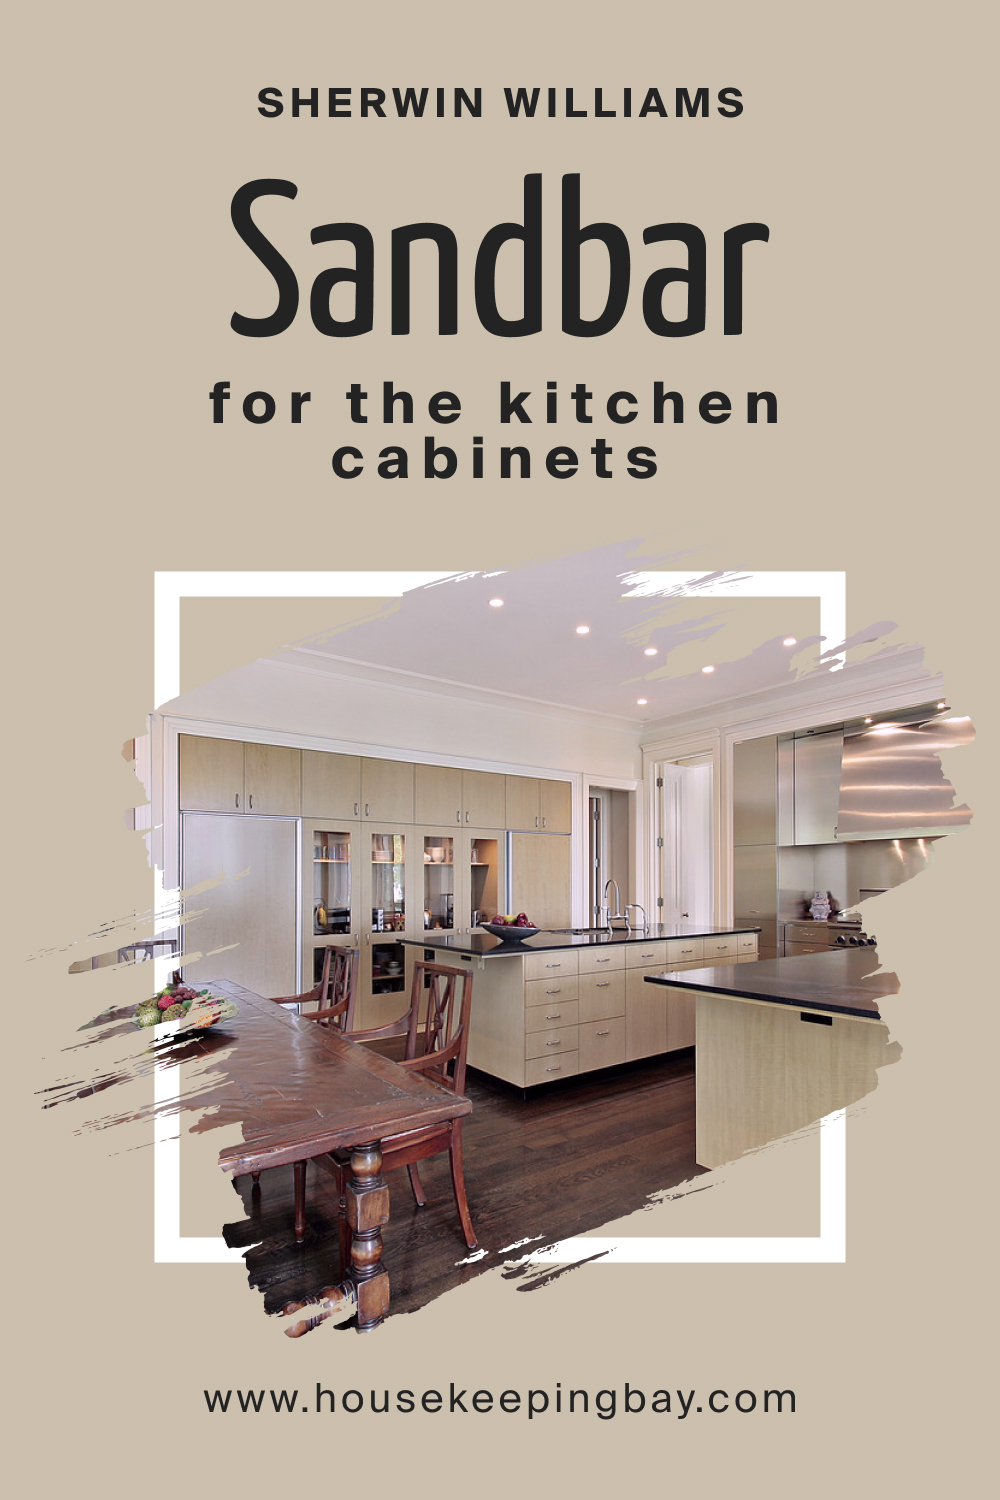 Sherwin Williams. SW 7547 Sandbar For the Kitchen Cabinets